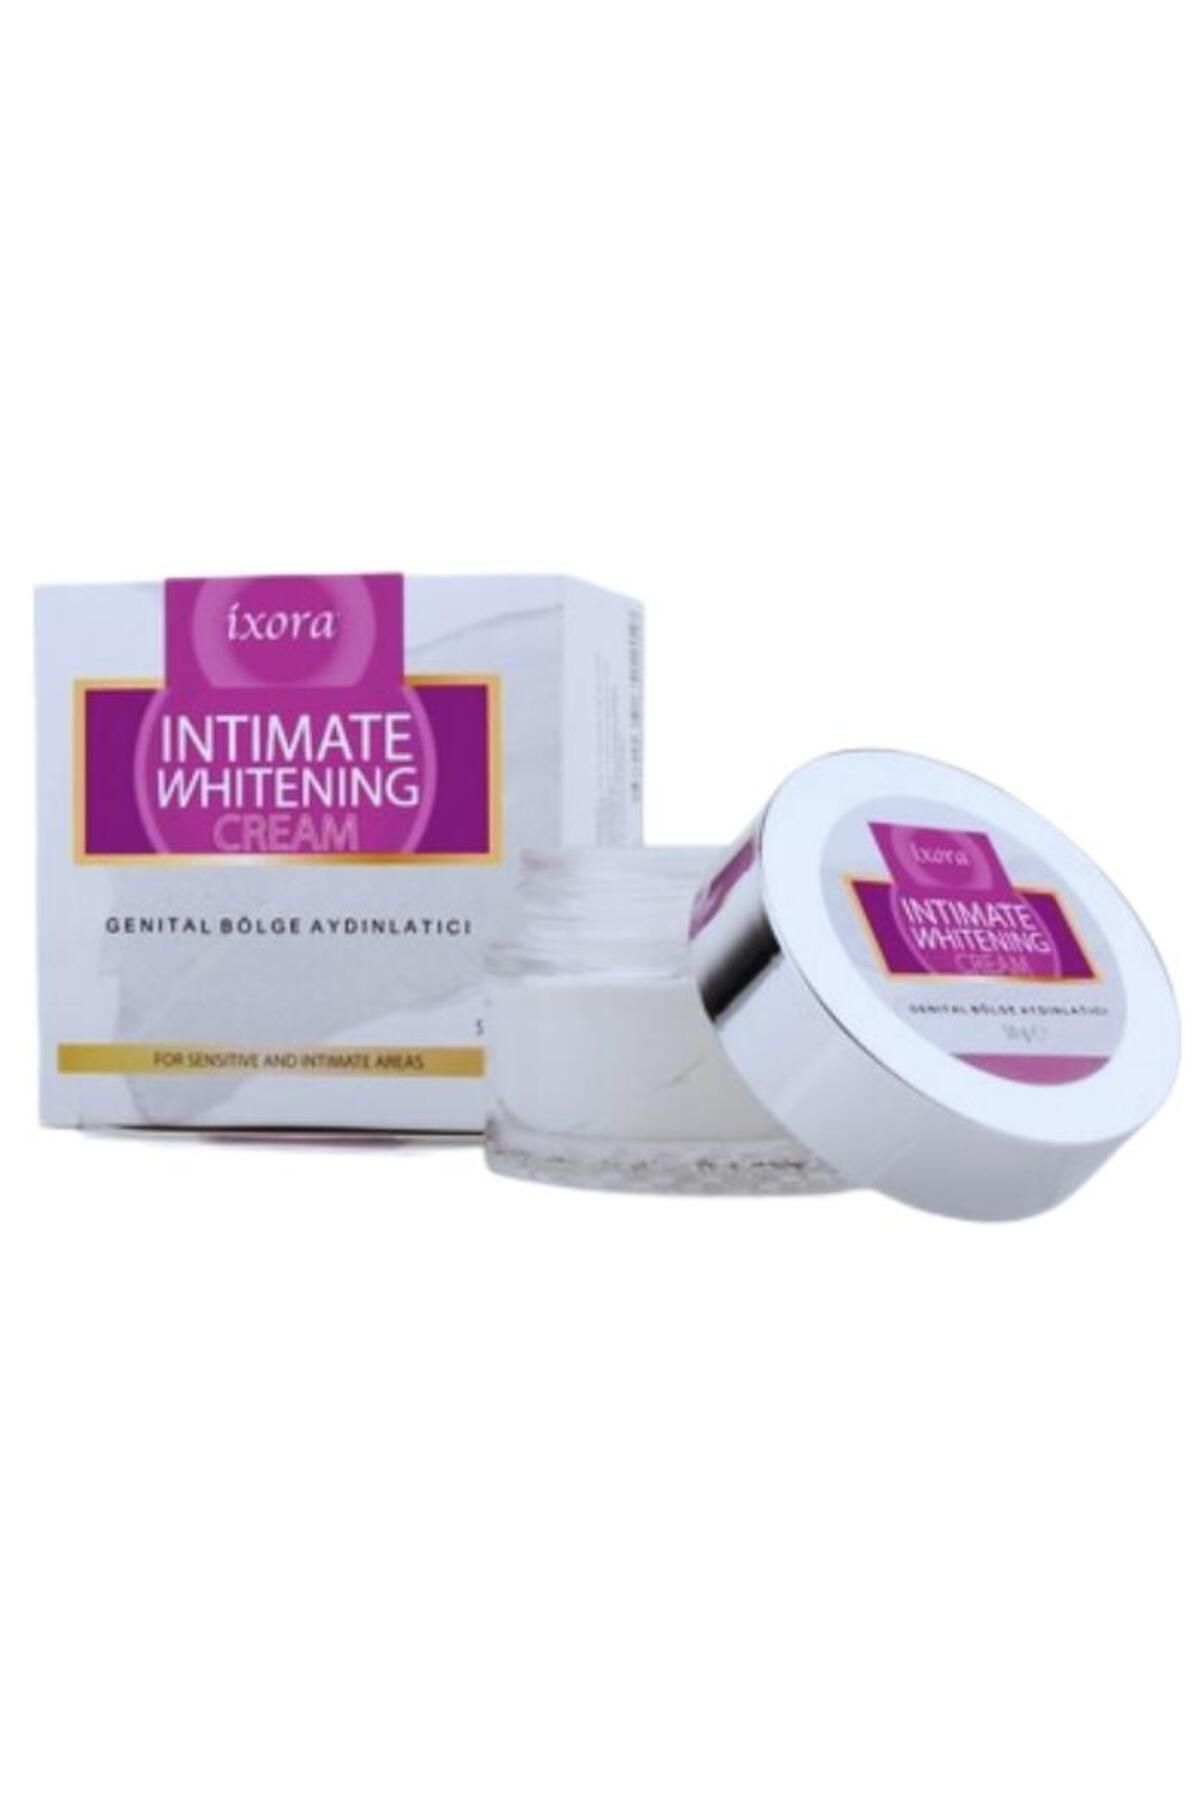 Ixora Intimate Whitening Cream Genital Bölge Aydınlatıcı / Beyazlatıcı Krem